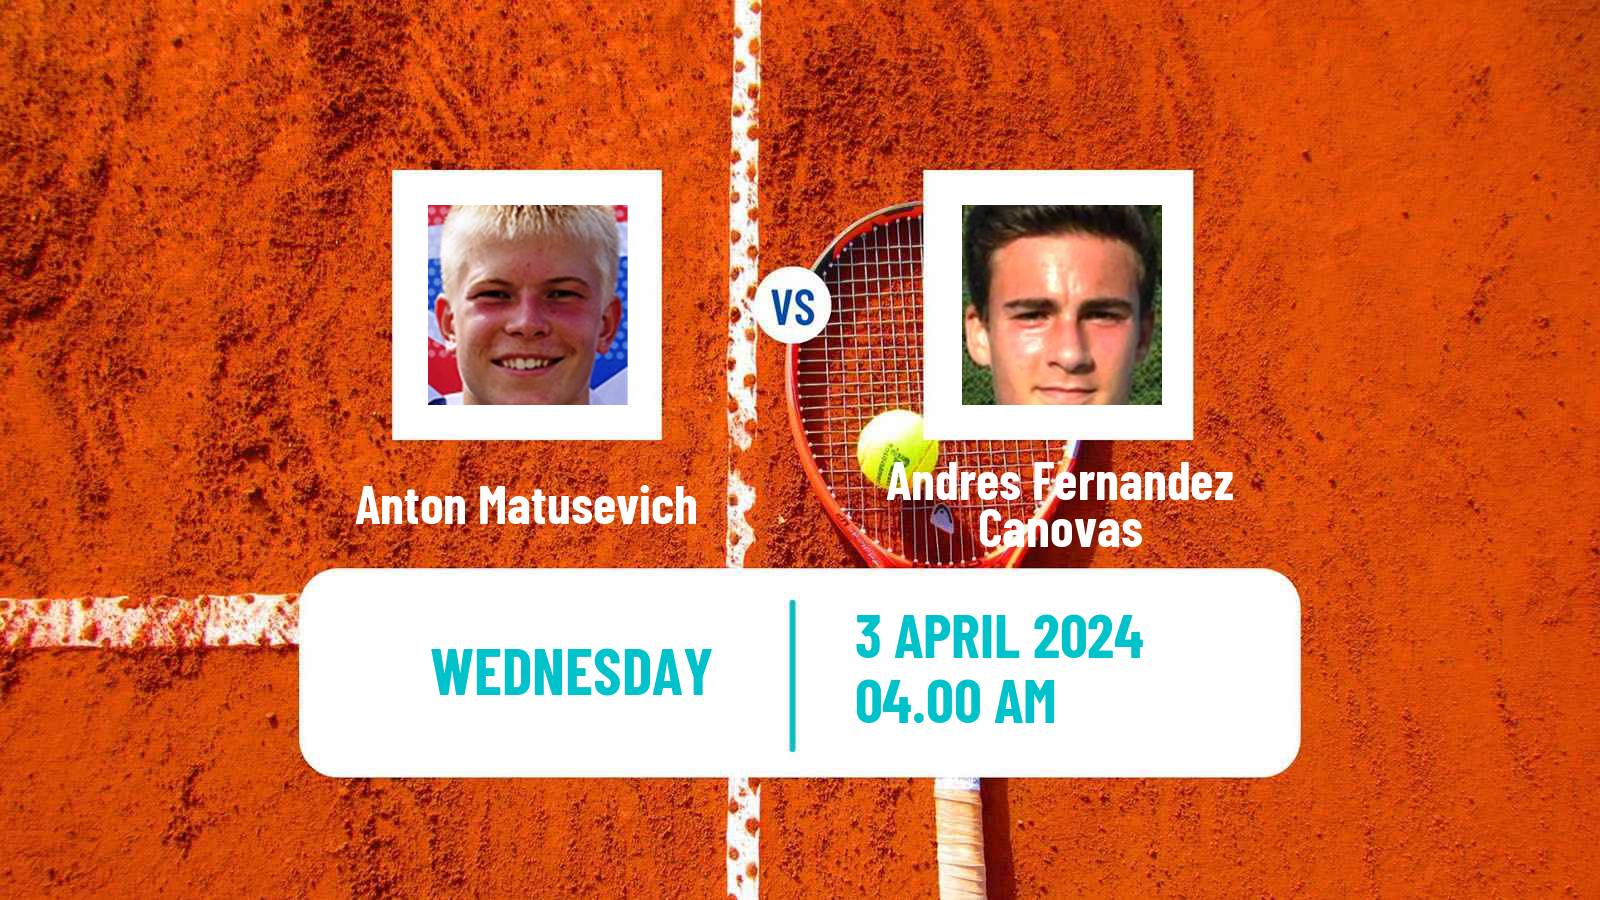 Tennis ITF M25 Reus Men Anton Matusevich - Andres Fernandez Canovas